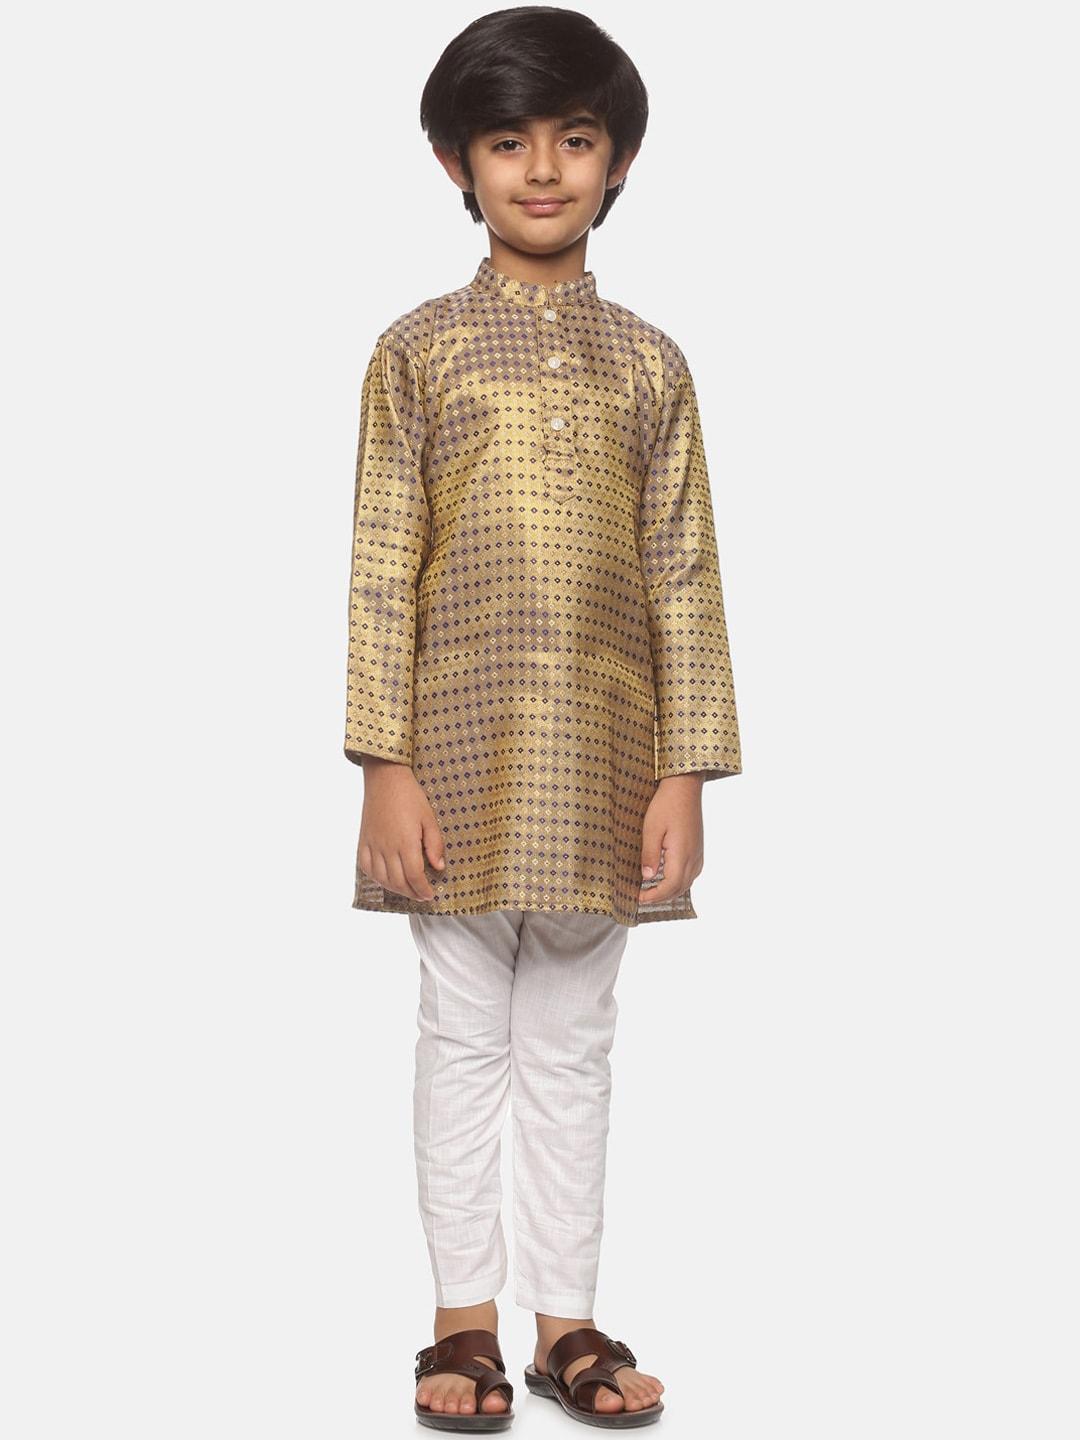 sethukrishna boys gold-toned embroidered & embellished kurta with pyjamas